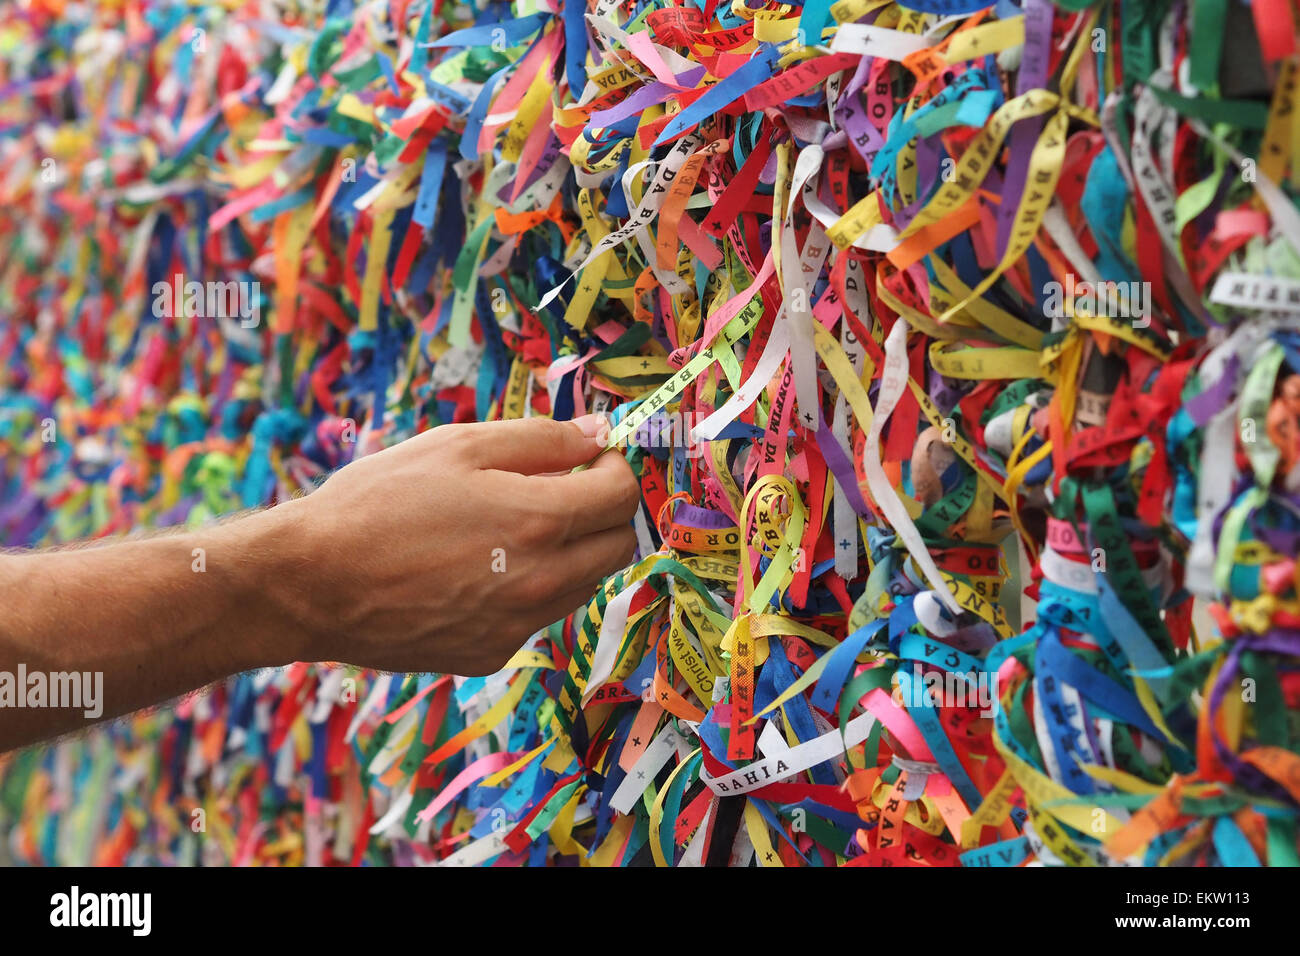 Tourist hand touching colorful Senhor do Bonfim wristbands at Pelourinho in Salvador, Bahia, Brazil. Stock Photo